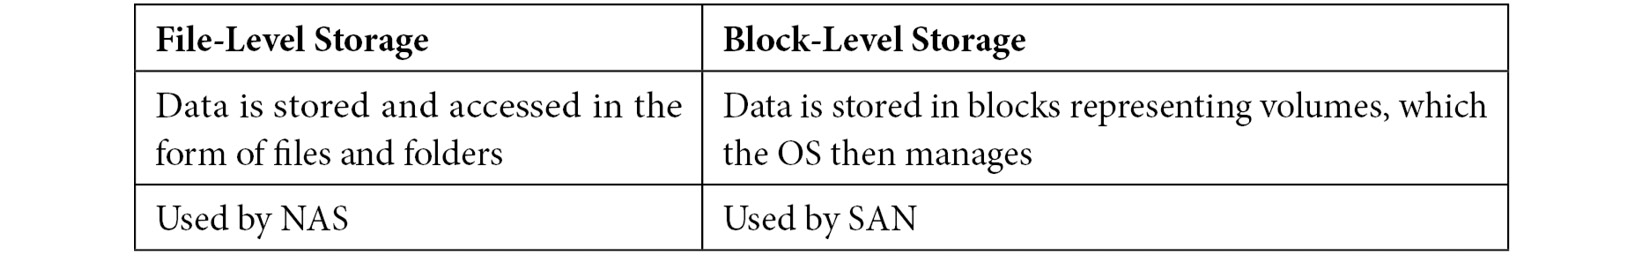 Table 9.1 – Block-level versus file-level storage
